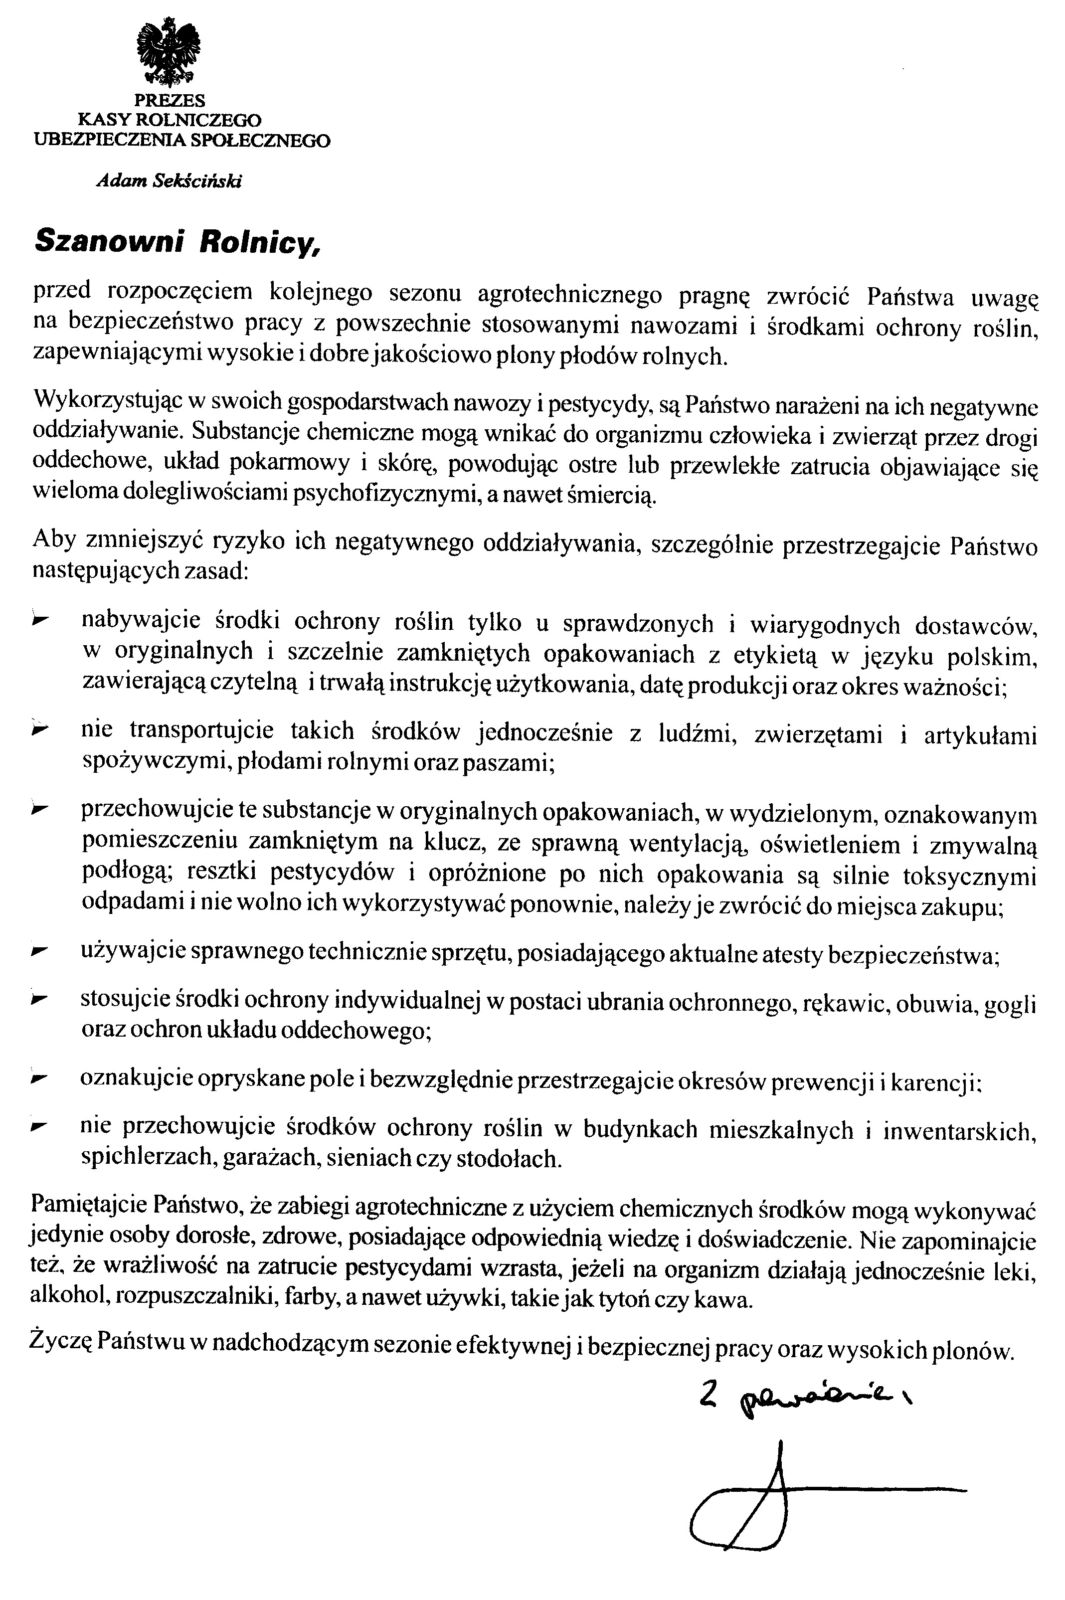 List Prezesa KRUS do rolników